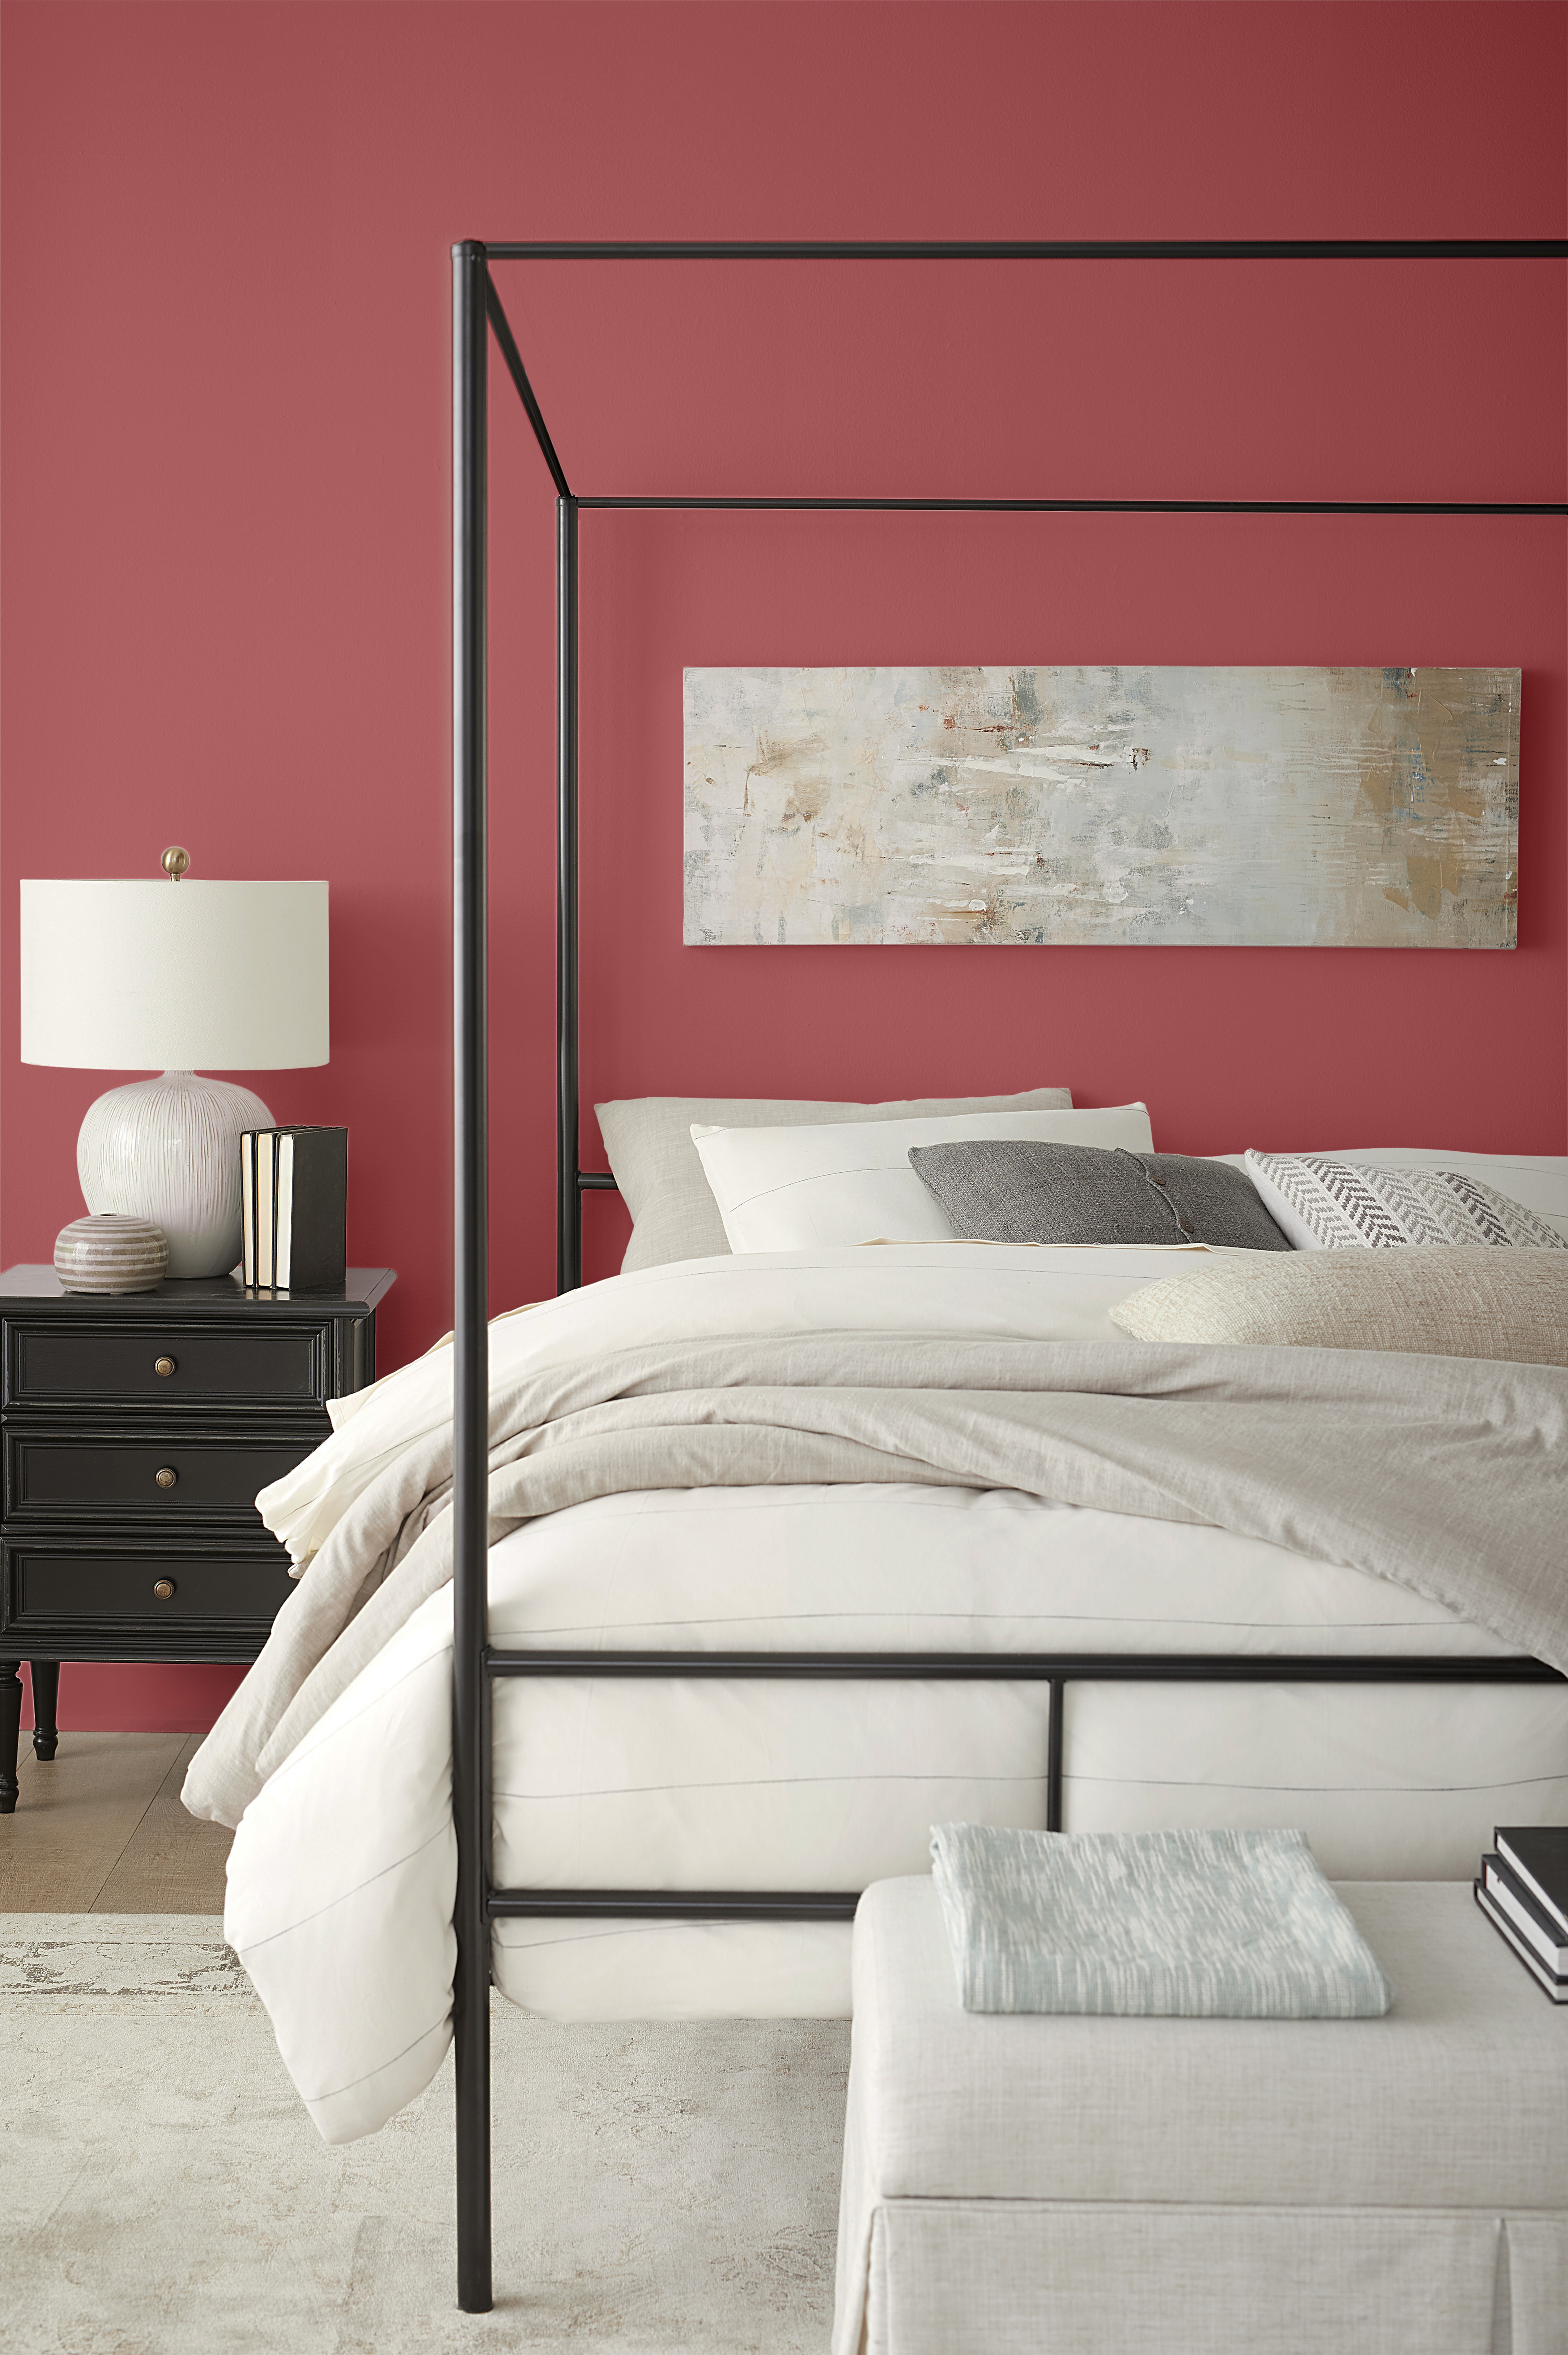 Une chambre contemporaine avec des meubles noirs et des murs rouges. La literie est blanche et beige clair avec des tons neutres de gris. Les murs sont peinturés d'une couleur rouge appelée Punch aux airelles.